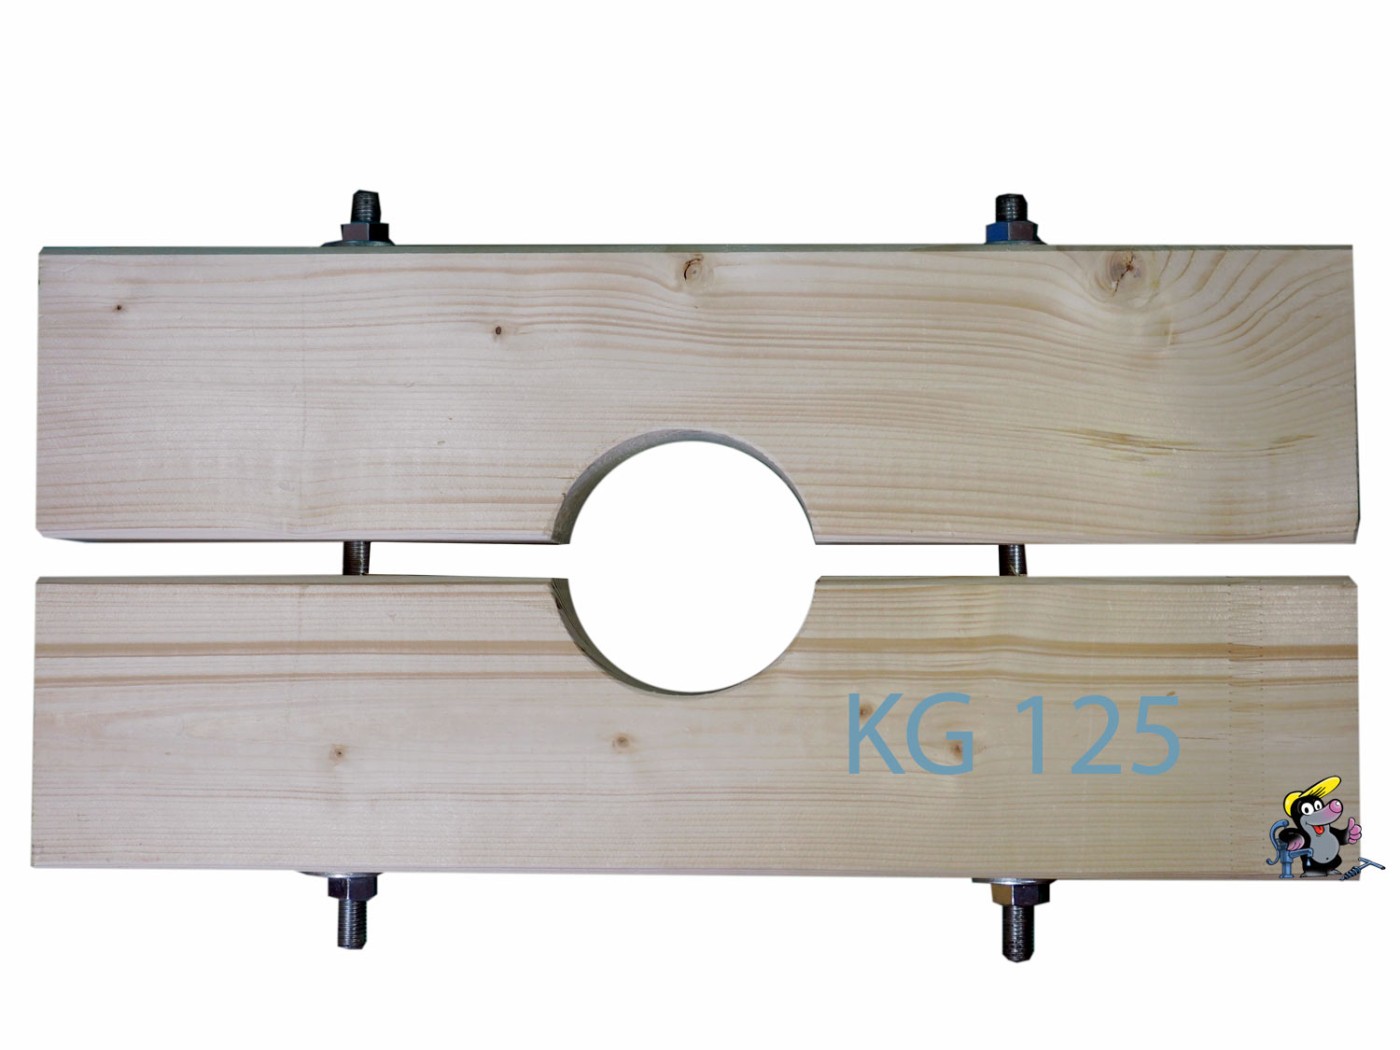 Holzzange die Große für KG 125 Rohr AD=125mm